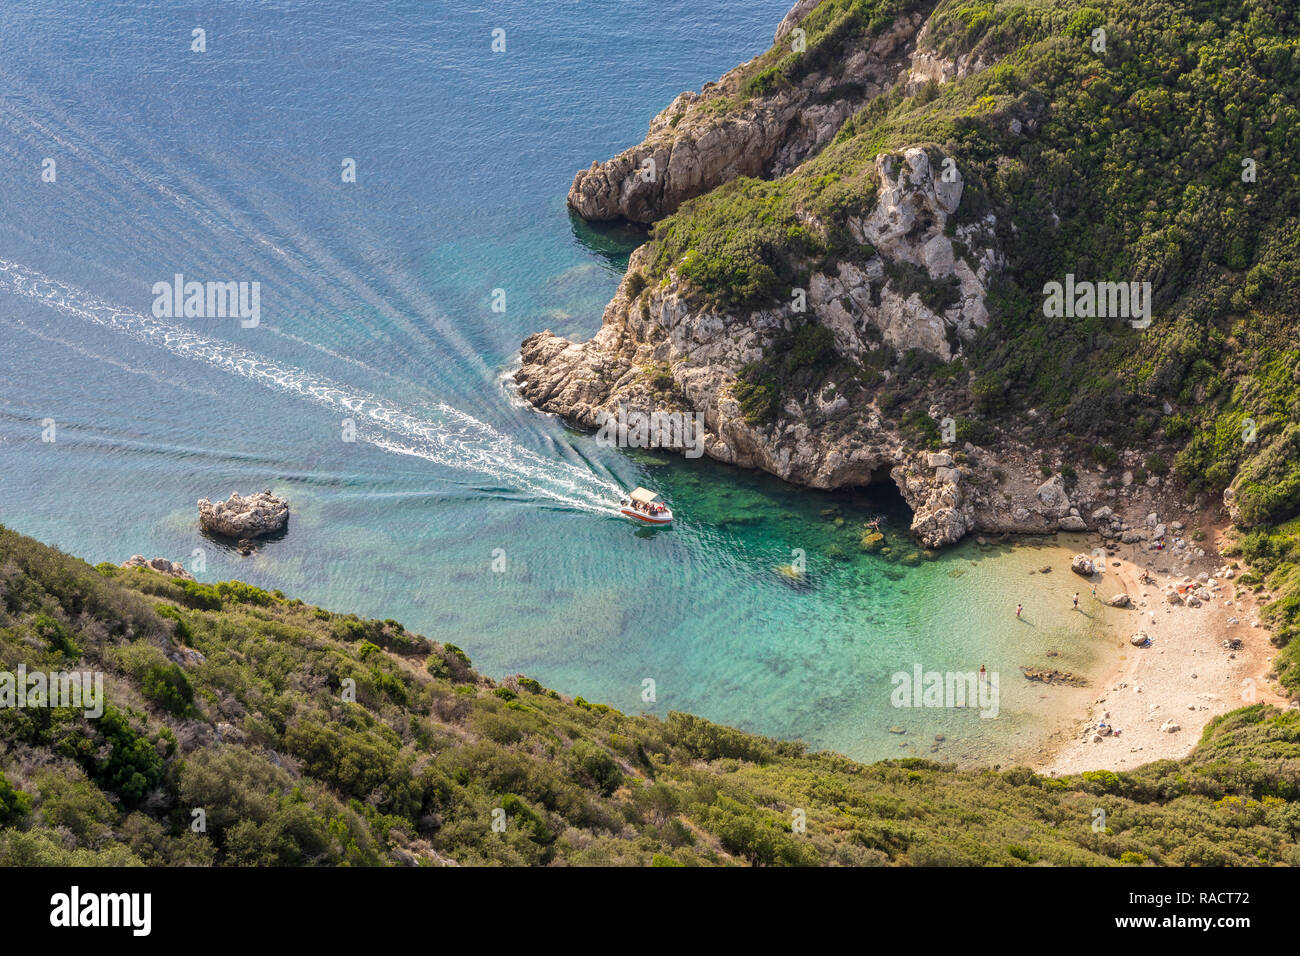 Hoher winkel Ausblick hinunter auf eine der Porto Timoni Strände und ein Taxi Boot nähert sich die Bucht, Afionas, Korfu, griechische Inseln, Griechenland, Europa Stockfoto